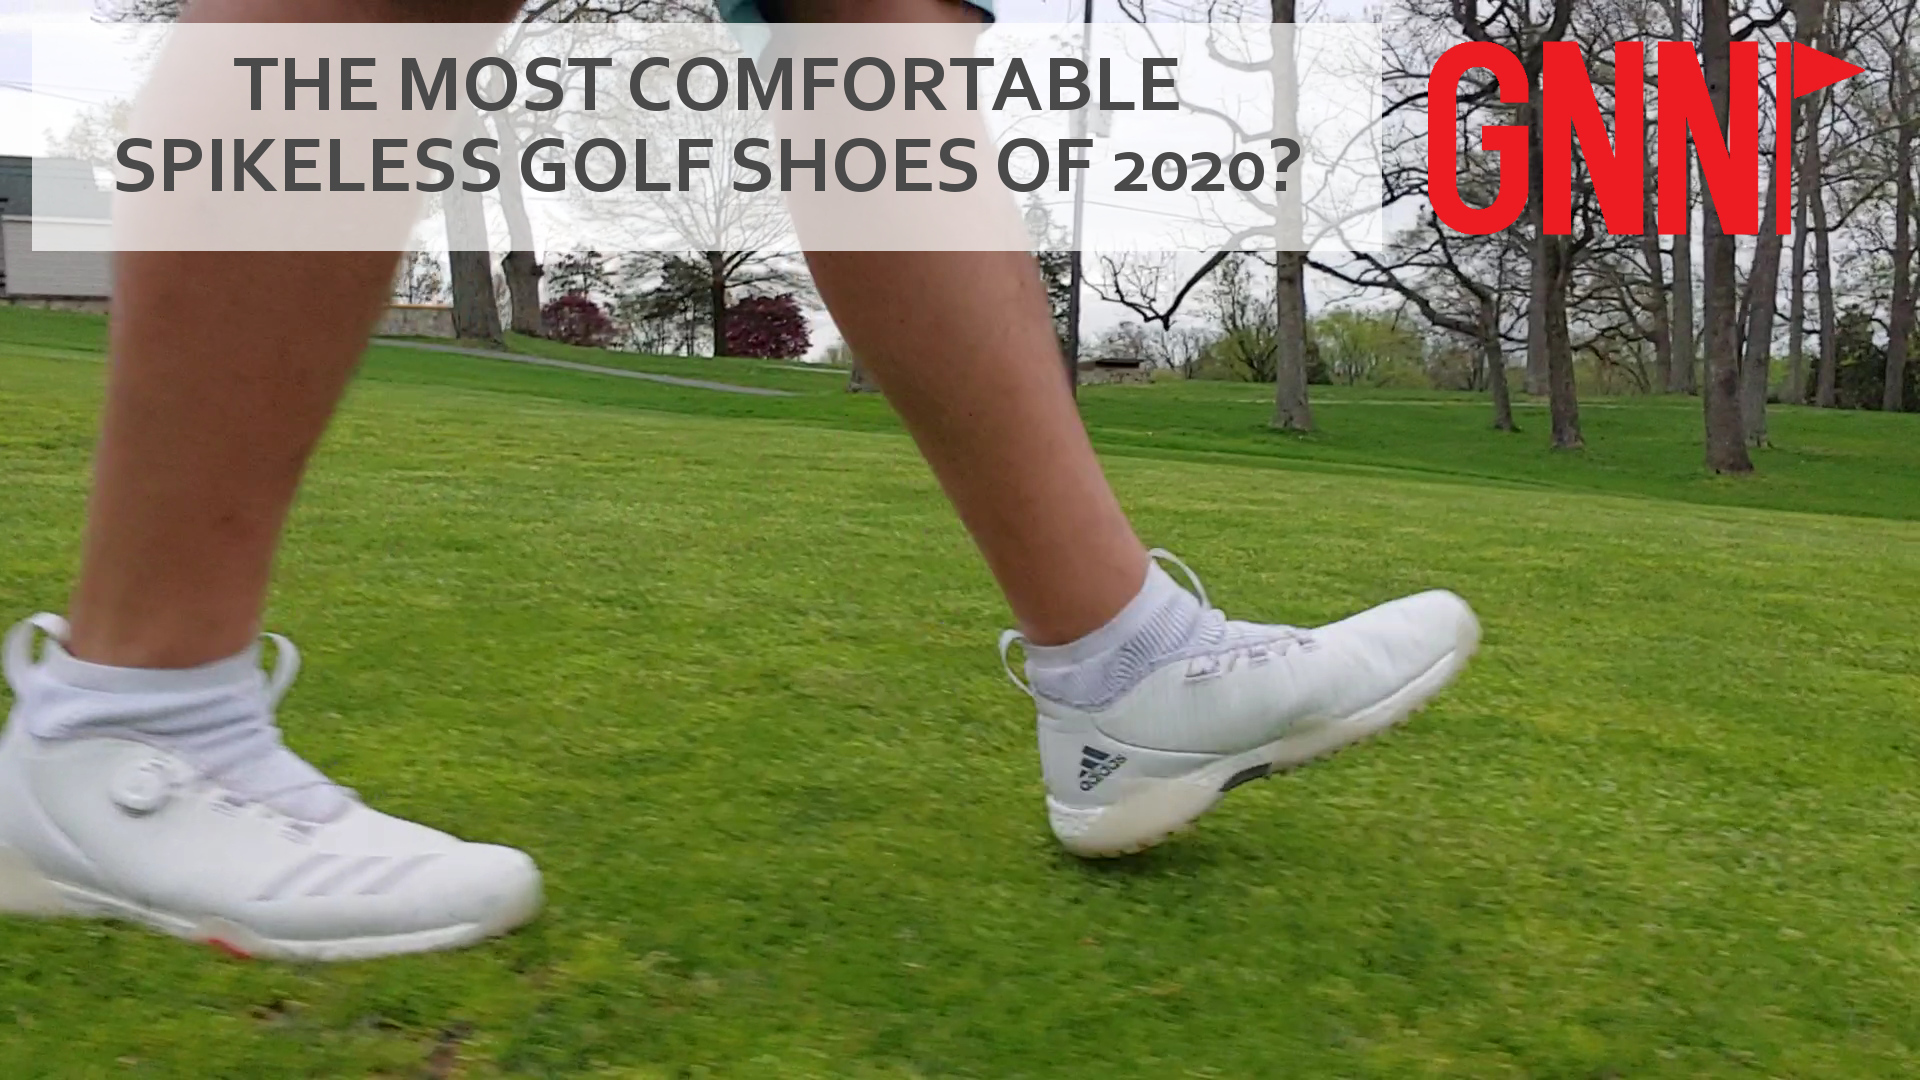 adidas men's codechaos boa golf shoes